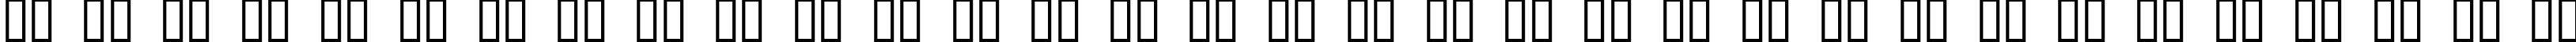 Пример написания русского алфавита шрифтом Romvel Cyr